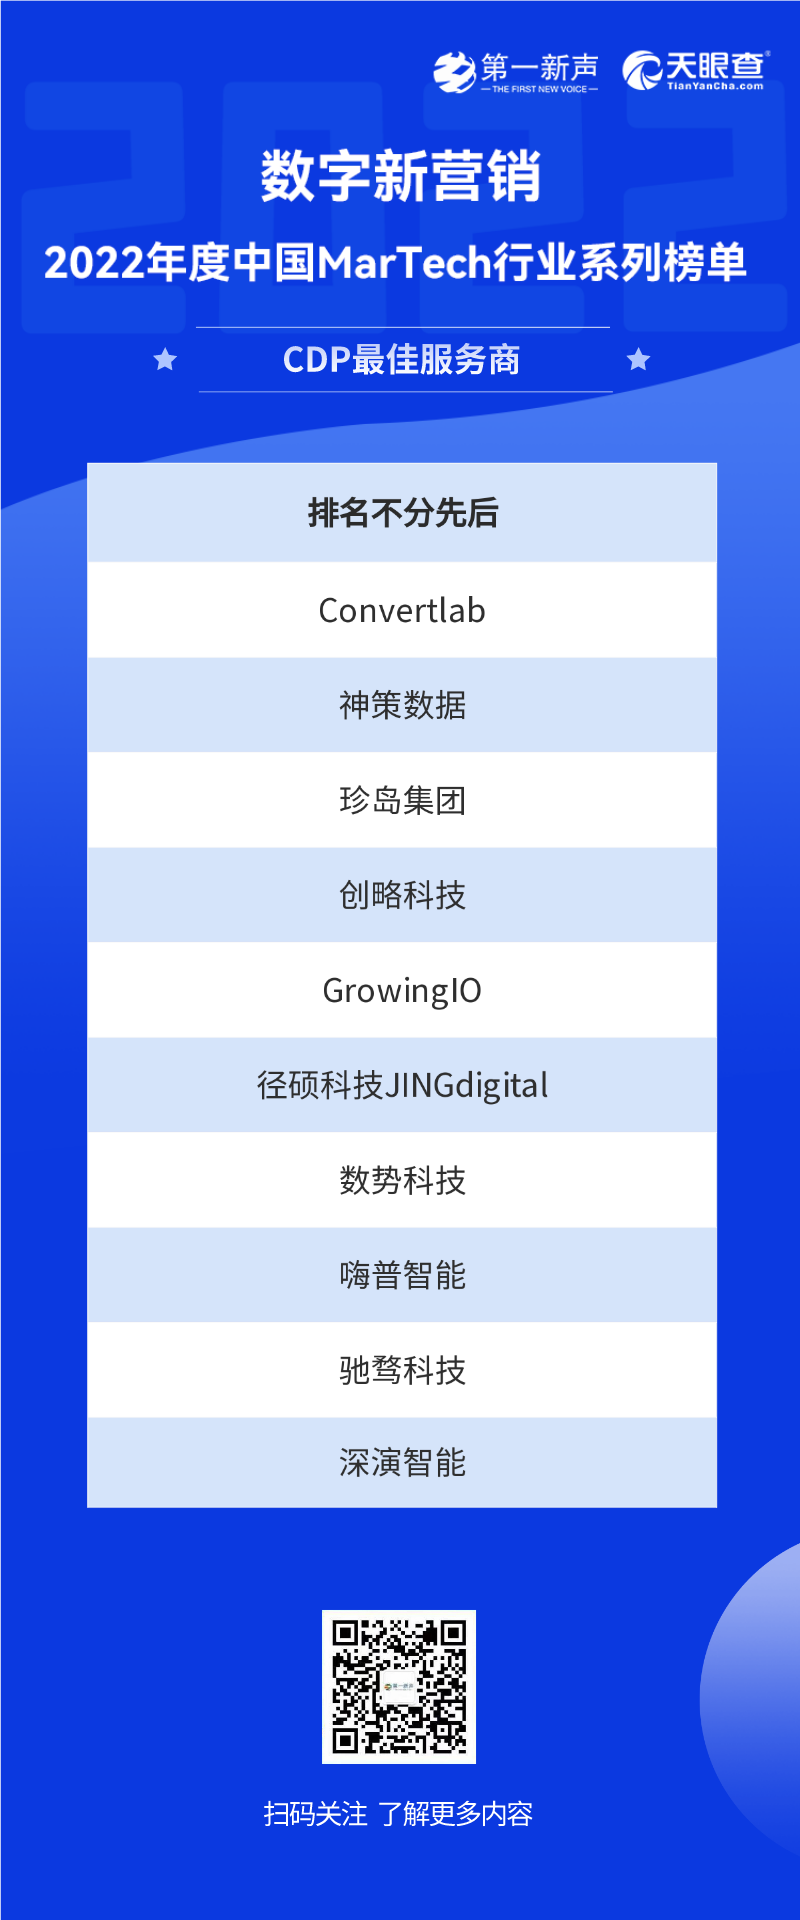 2022年度中国MarTech行业系列榜单正式发布，句子互动入选SCRM最佳服务商 第12张